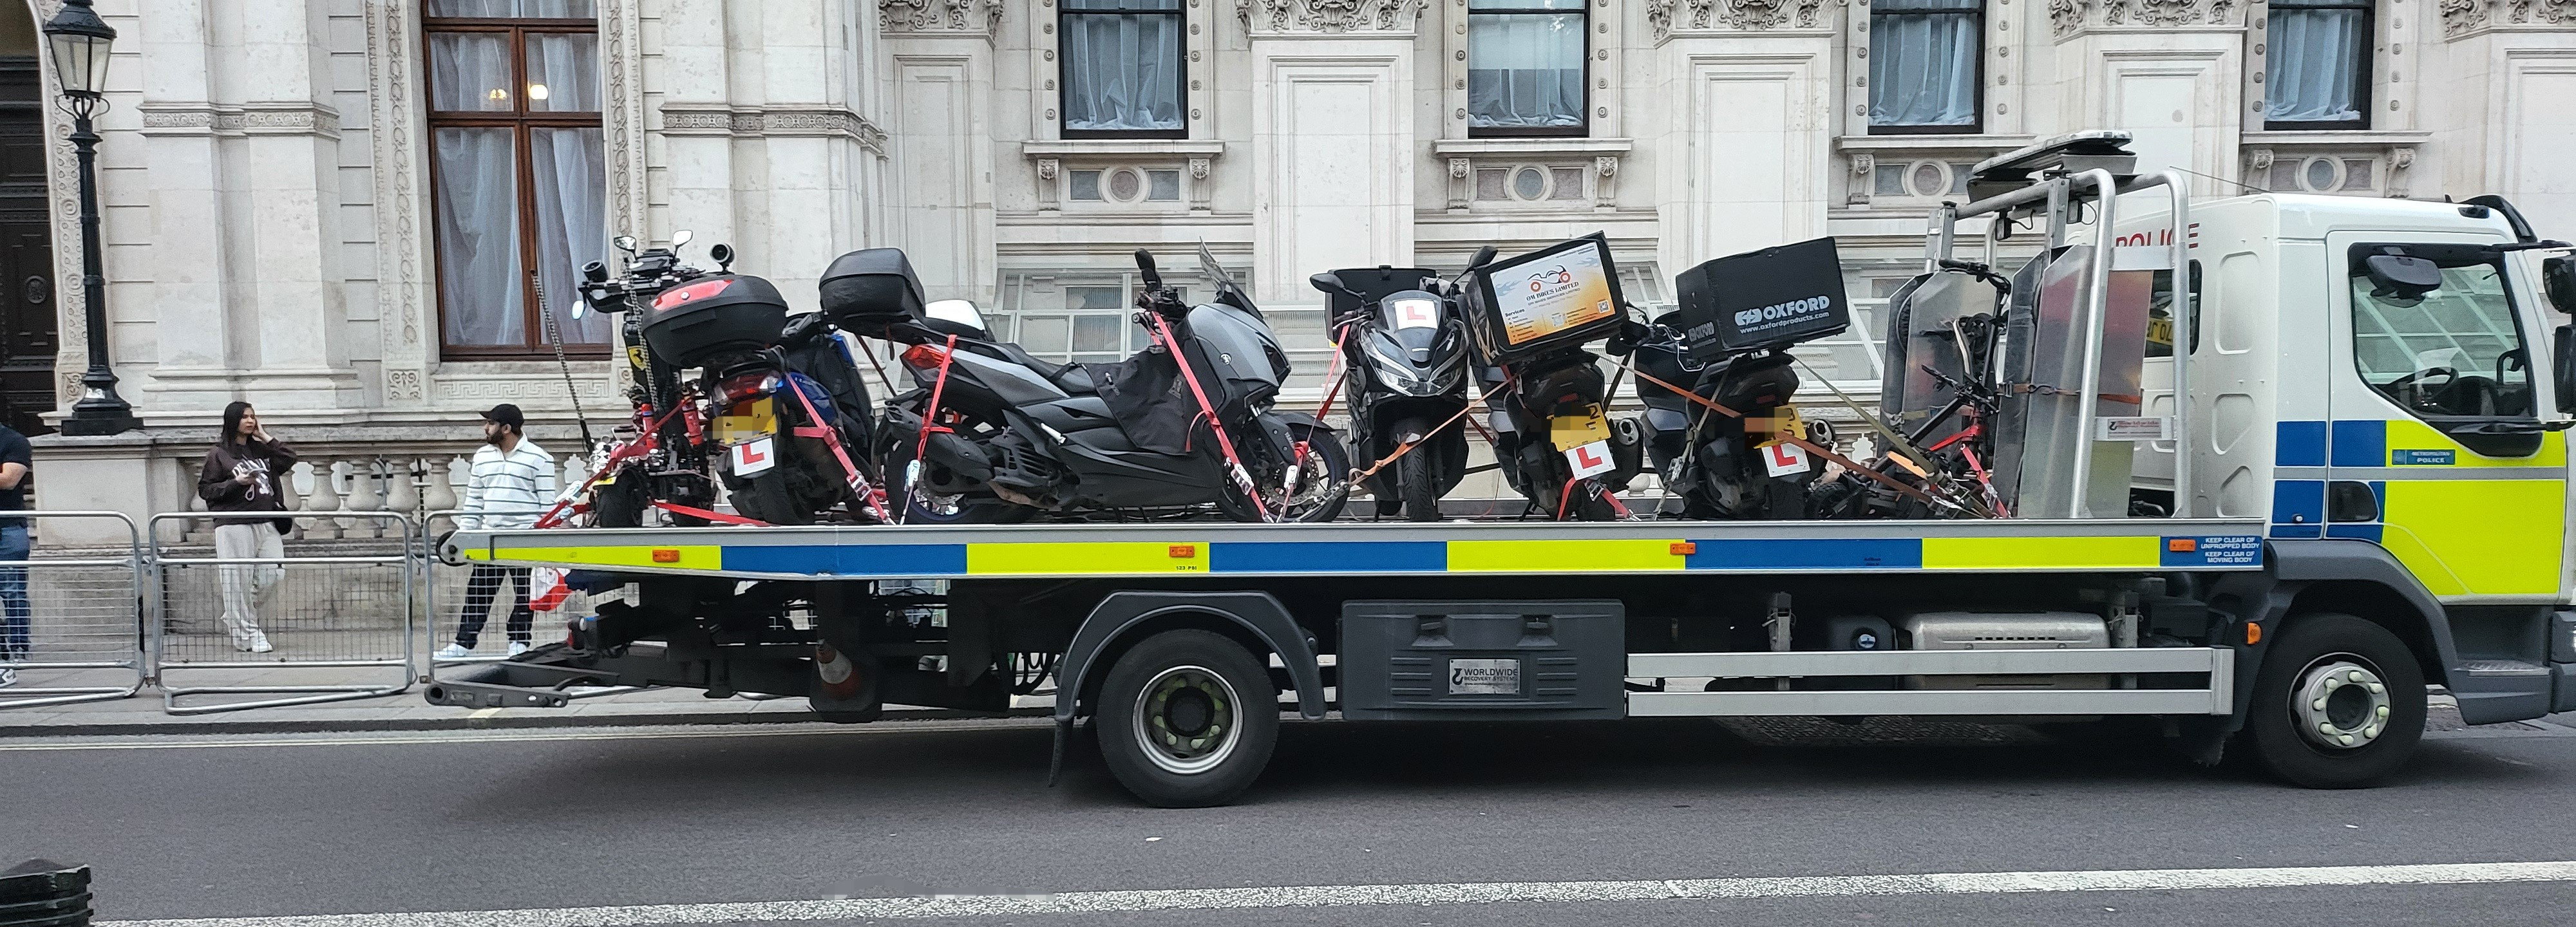 Une cinquantaine de véhicules ont été saisis par les forces de l'ordre à Londres